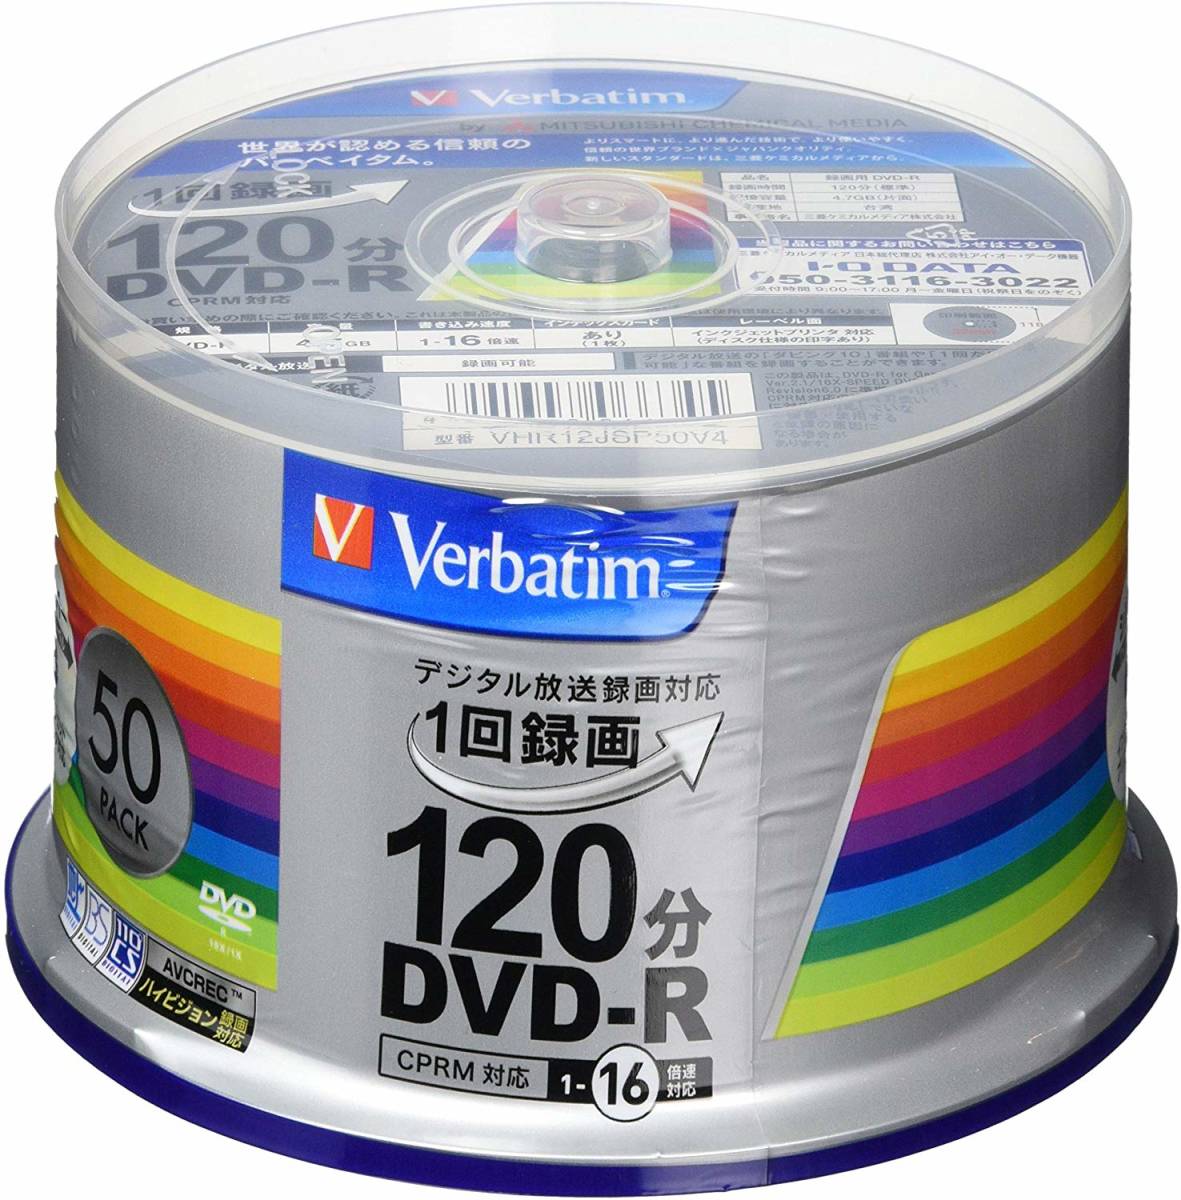 684円 限定版 バーベイタムジャパン Verbatim Japan 1回録画用 DVD-R CPRM 120分 50枚 ホワイトプリンタブル 片面1層 1